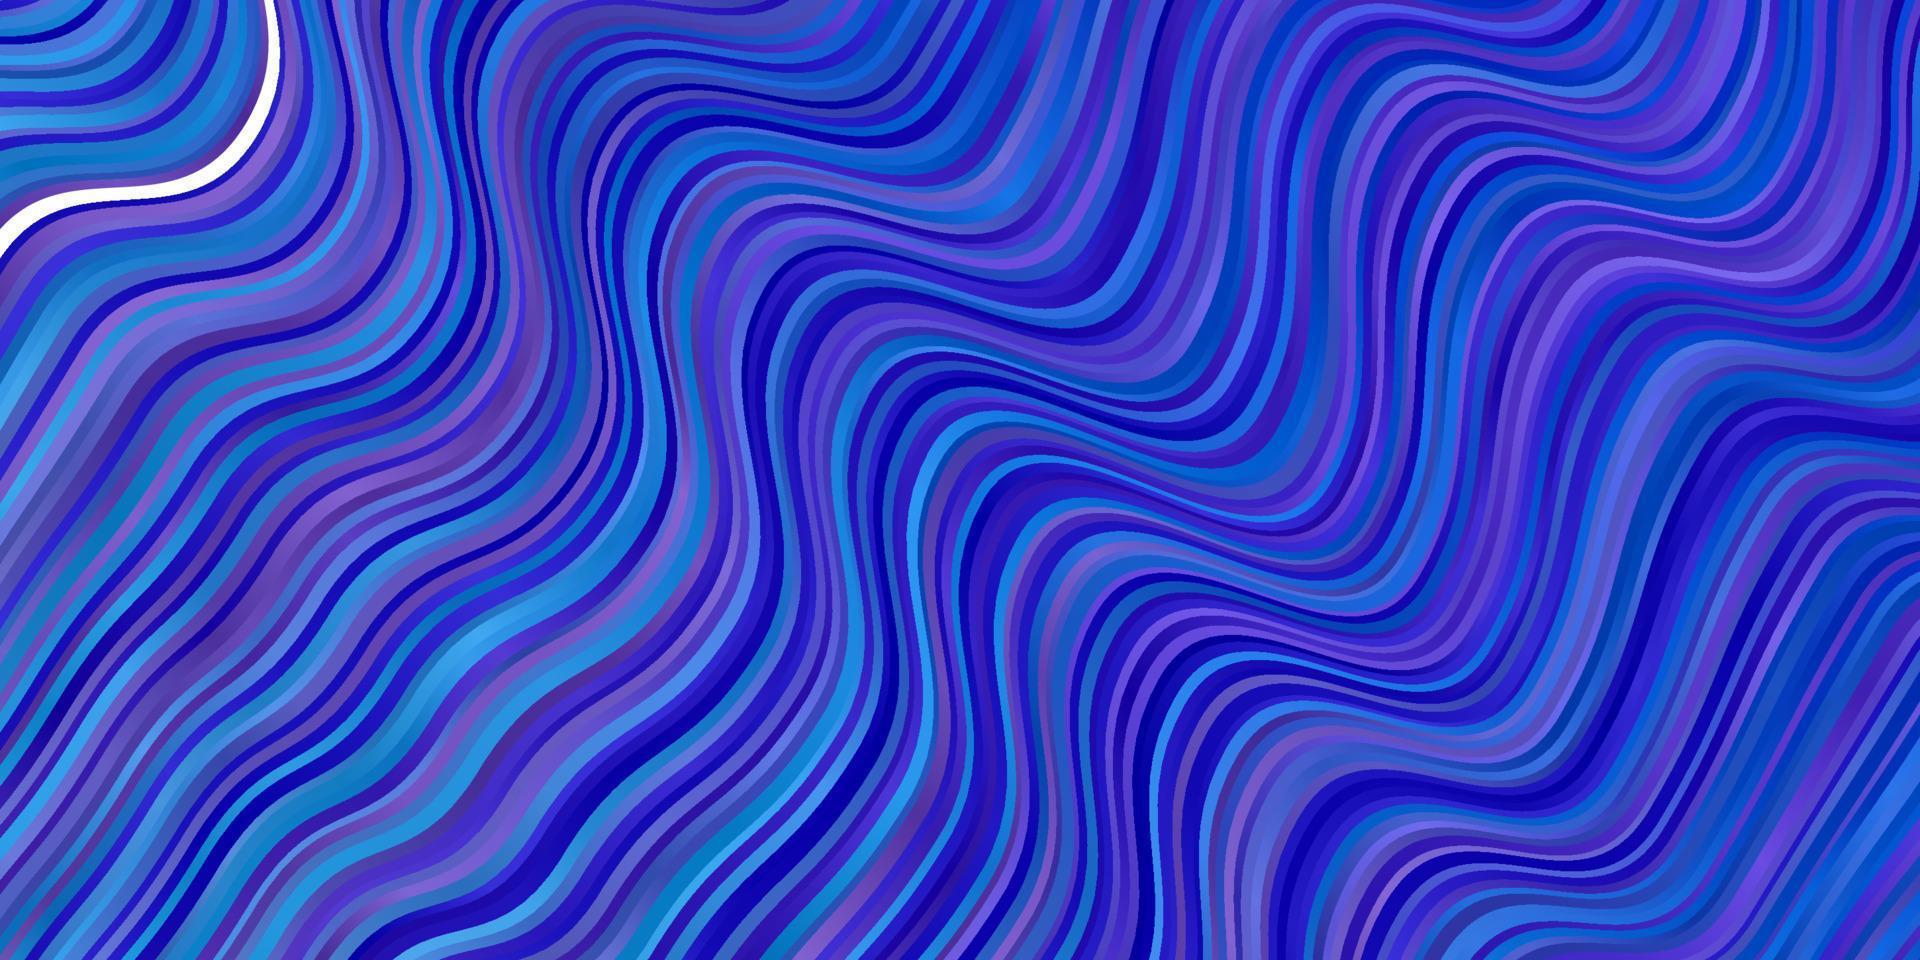 hellrosa, blauer Vektorhintergrund mit trockenen Linien. vektor